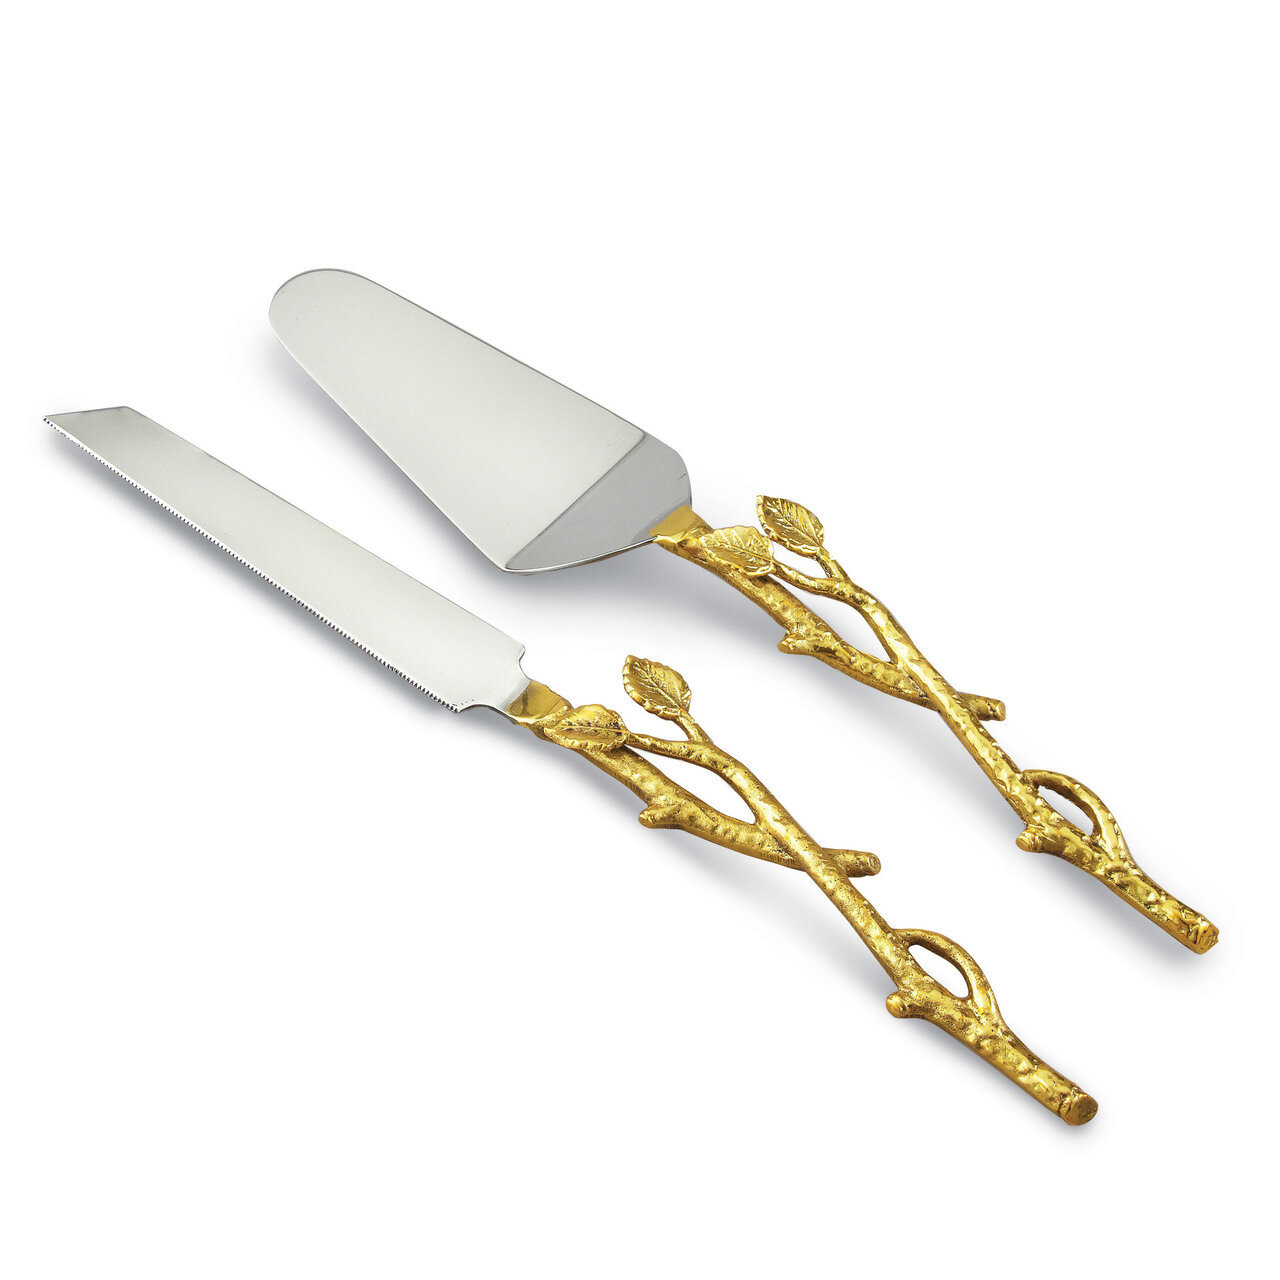 Golden Vine Cake/Knife Set Stainless Steel GM14137